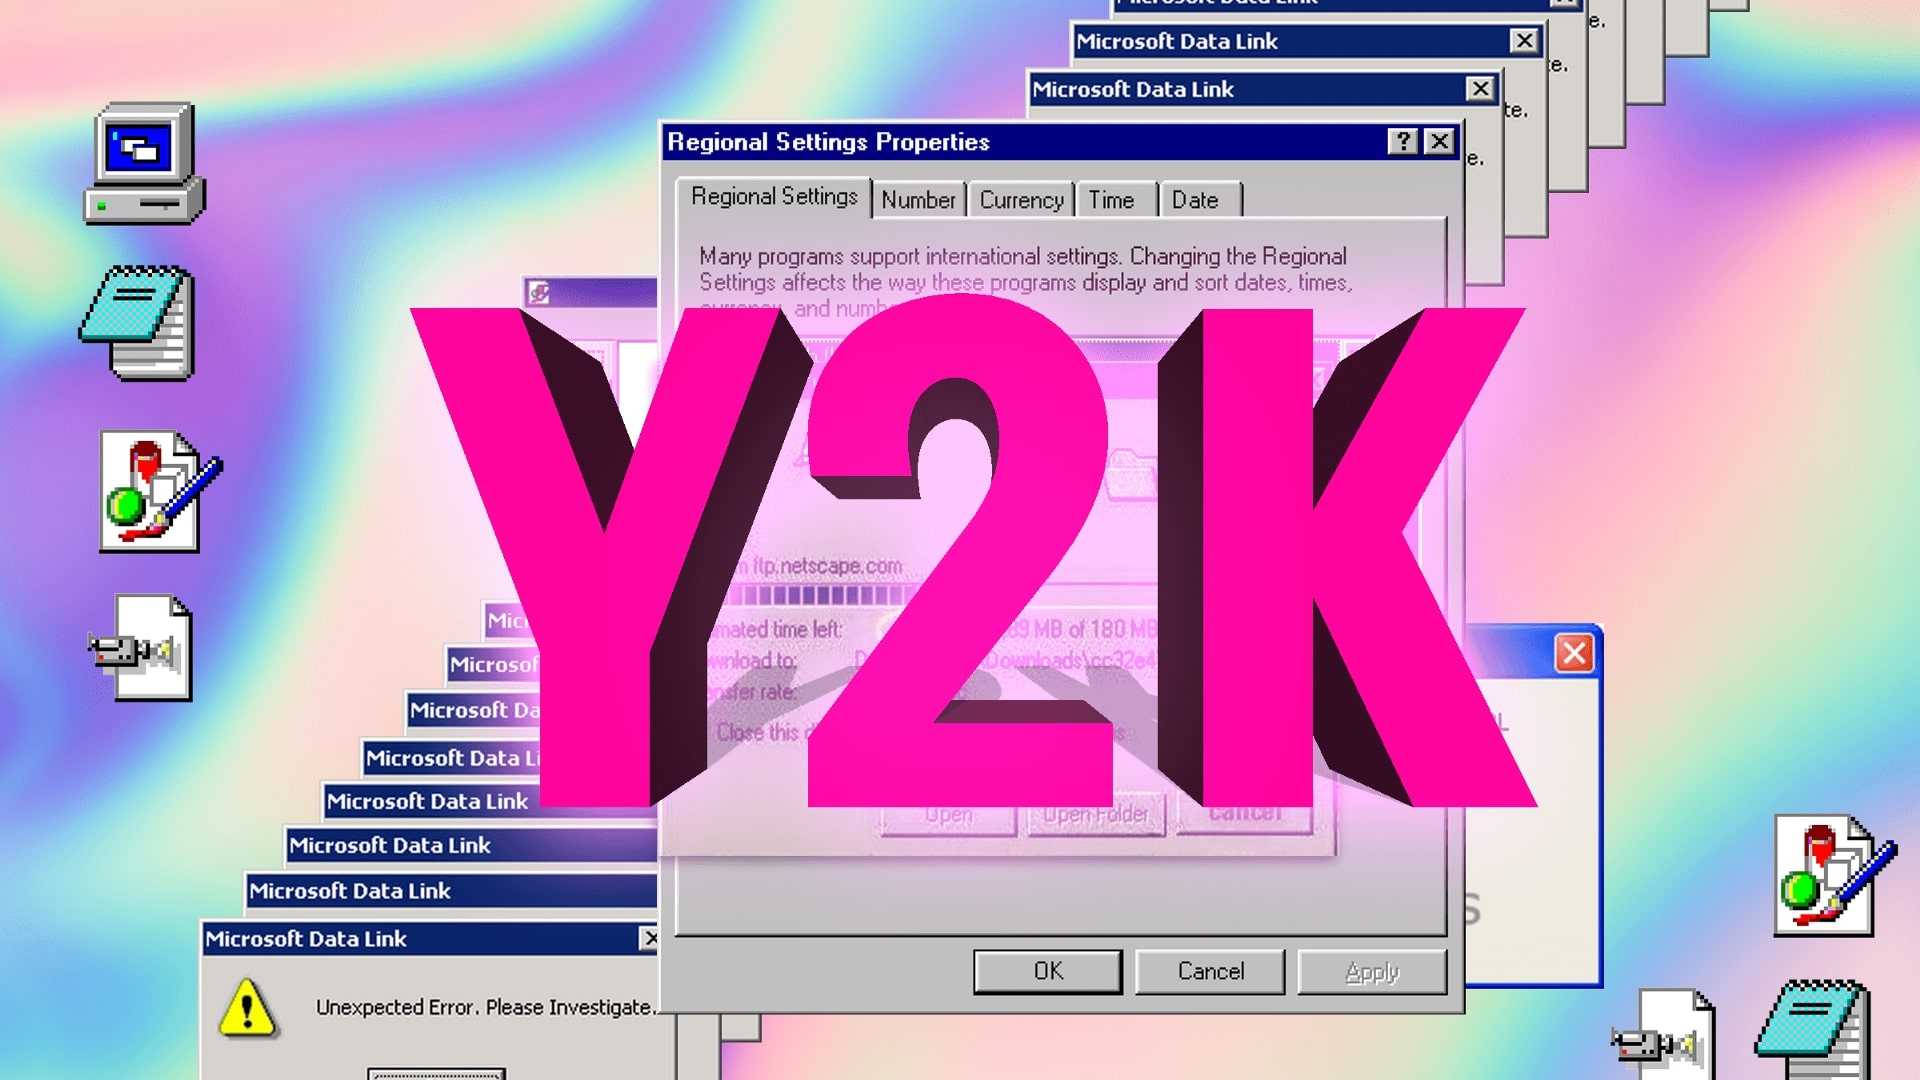 Tình yêu thời trang y2k sẽ chắc chắn được đáp ứng với bộ sưu tập hình nền miễn phí này. Hãy tải về và sử dụng ngay từ hôm nay để tận hưởng không gian desktop mới lạ và độc đáo.